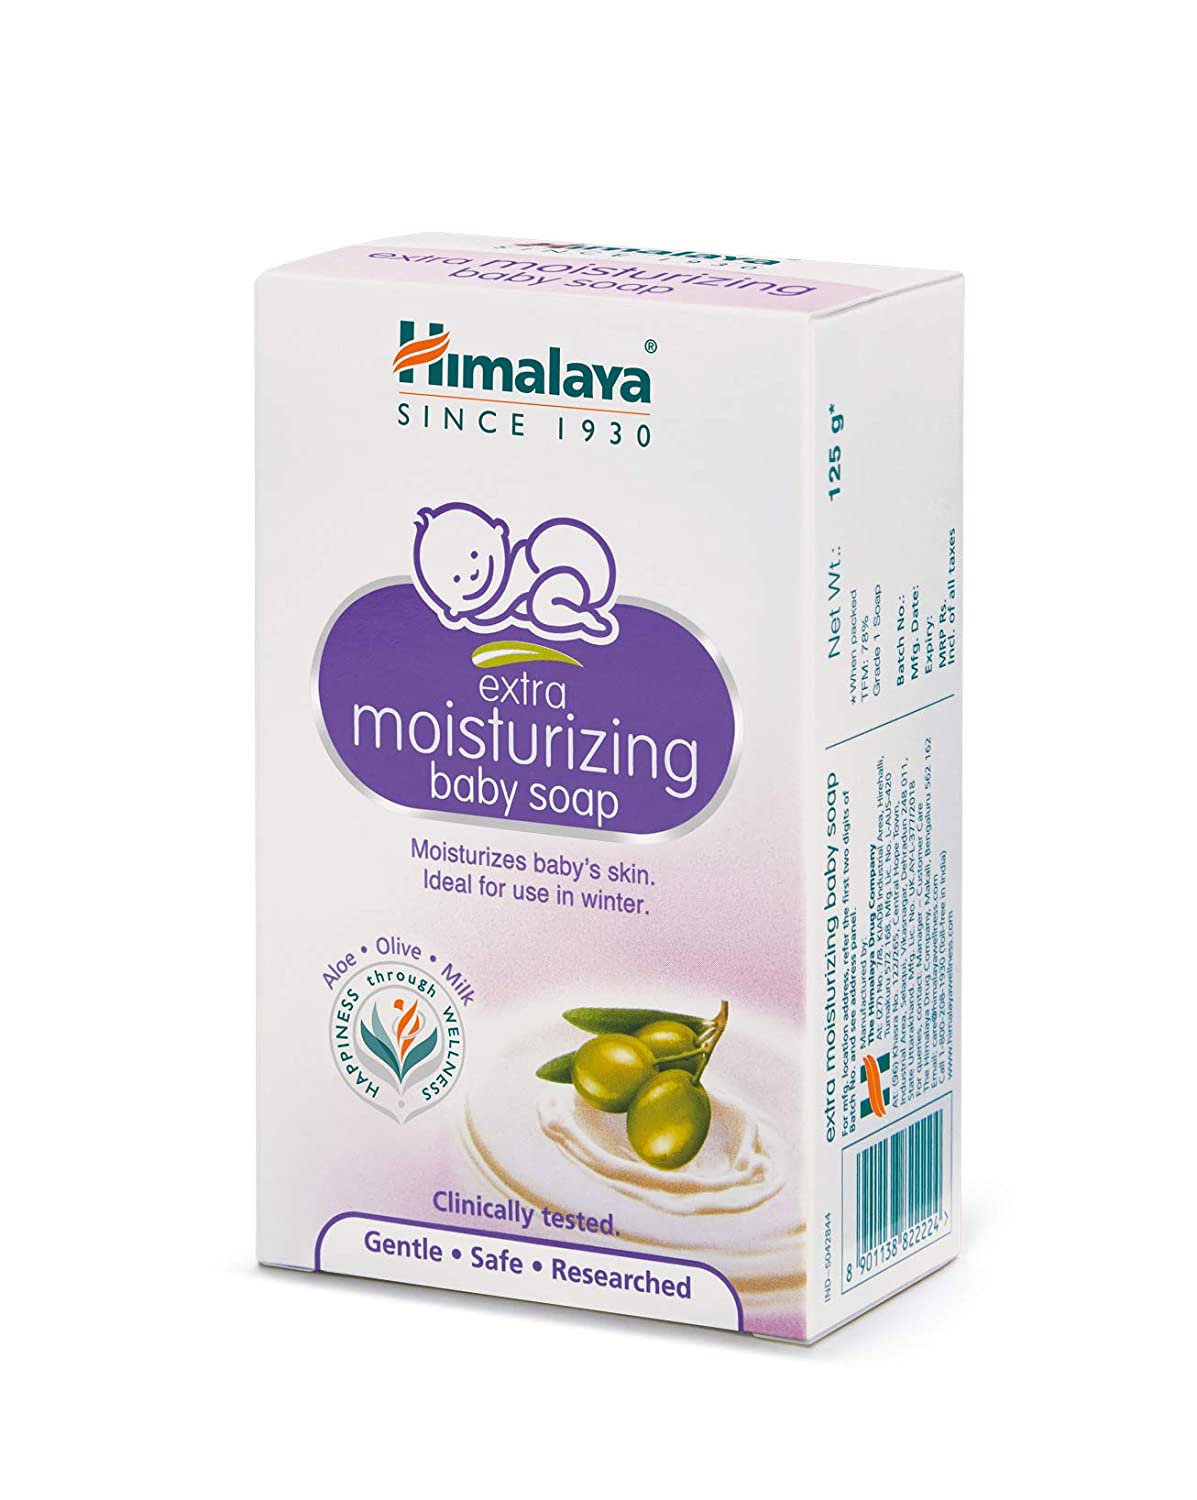 Himalaya Extra Moisturizing Baby Soap, 125g pack of 2